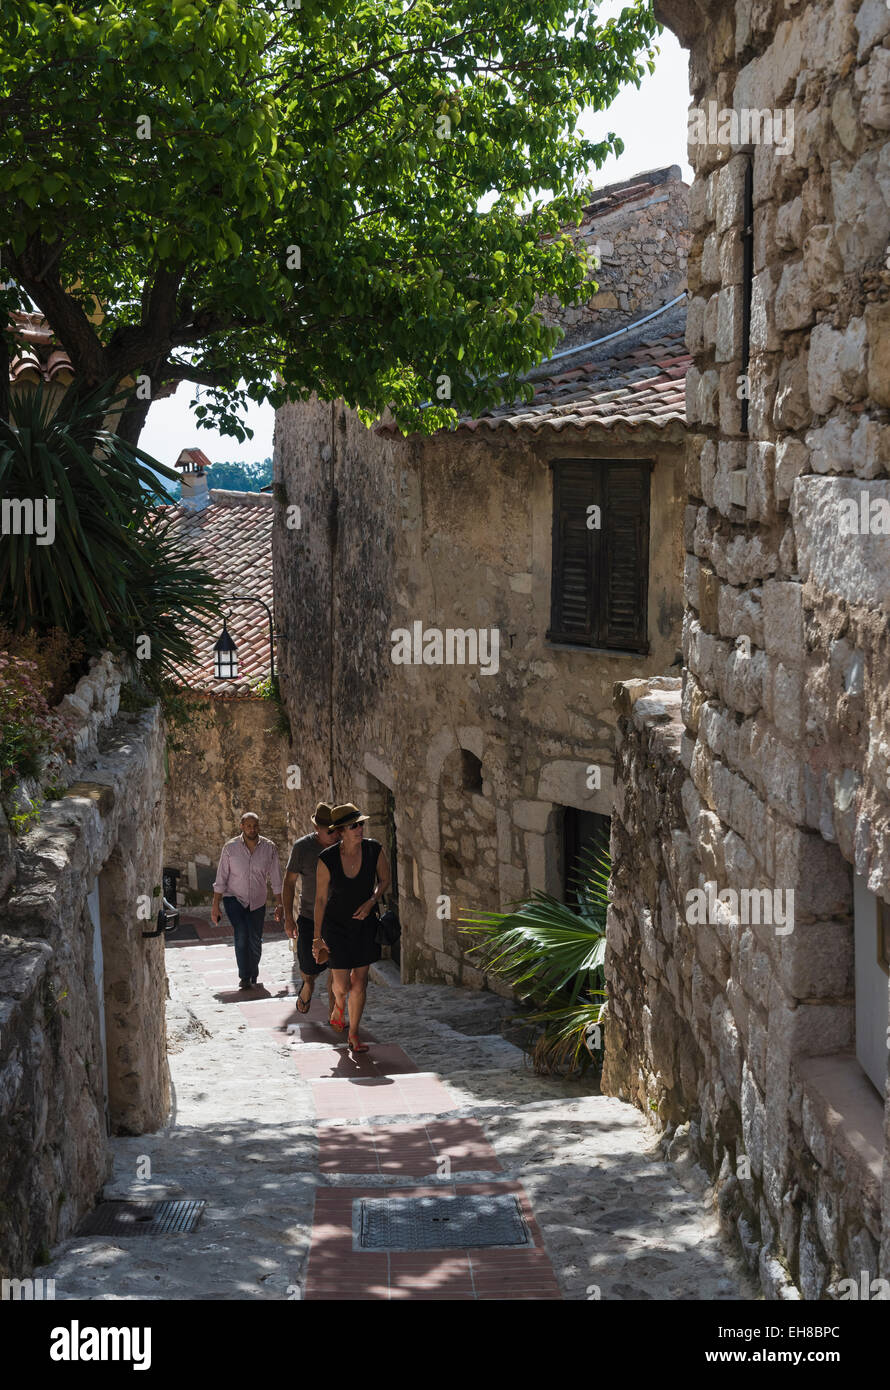 Les étroites rues pavées dans le village Eze, Provence, France, l'Europe avec les touristes Banque D'Images